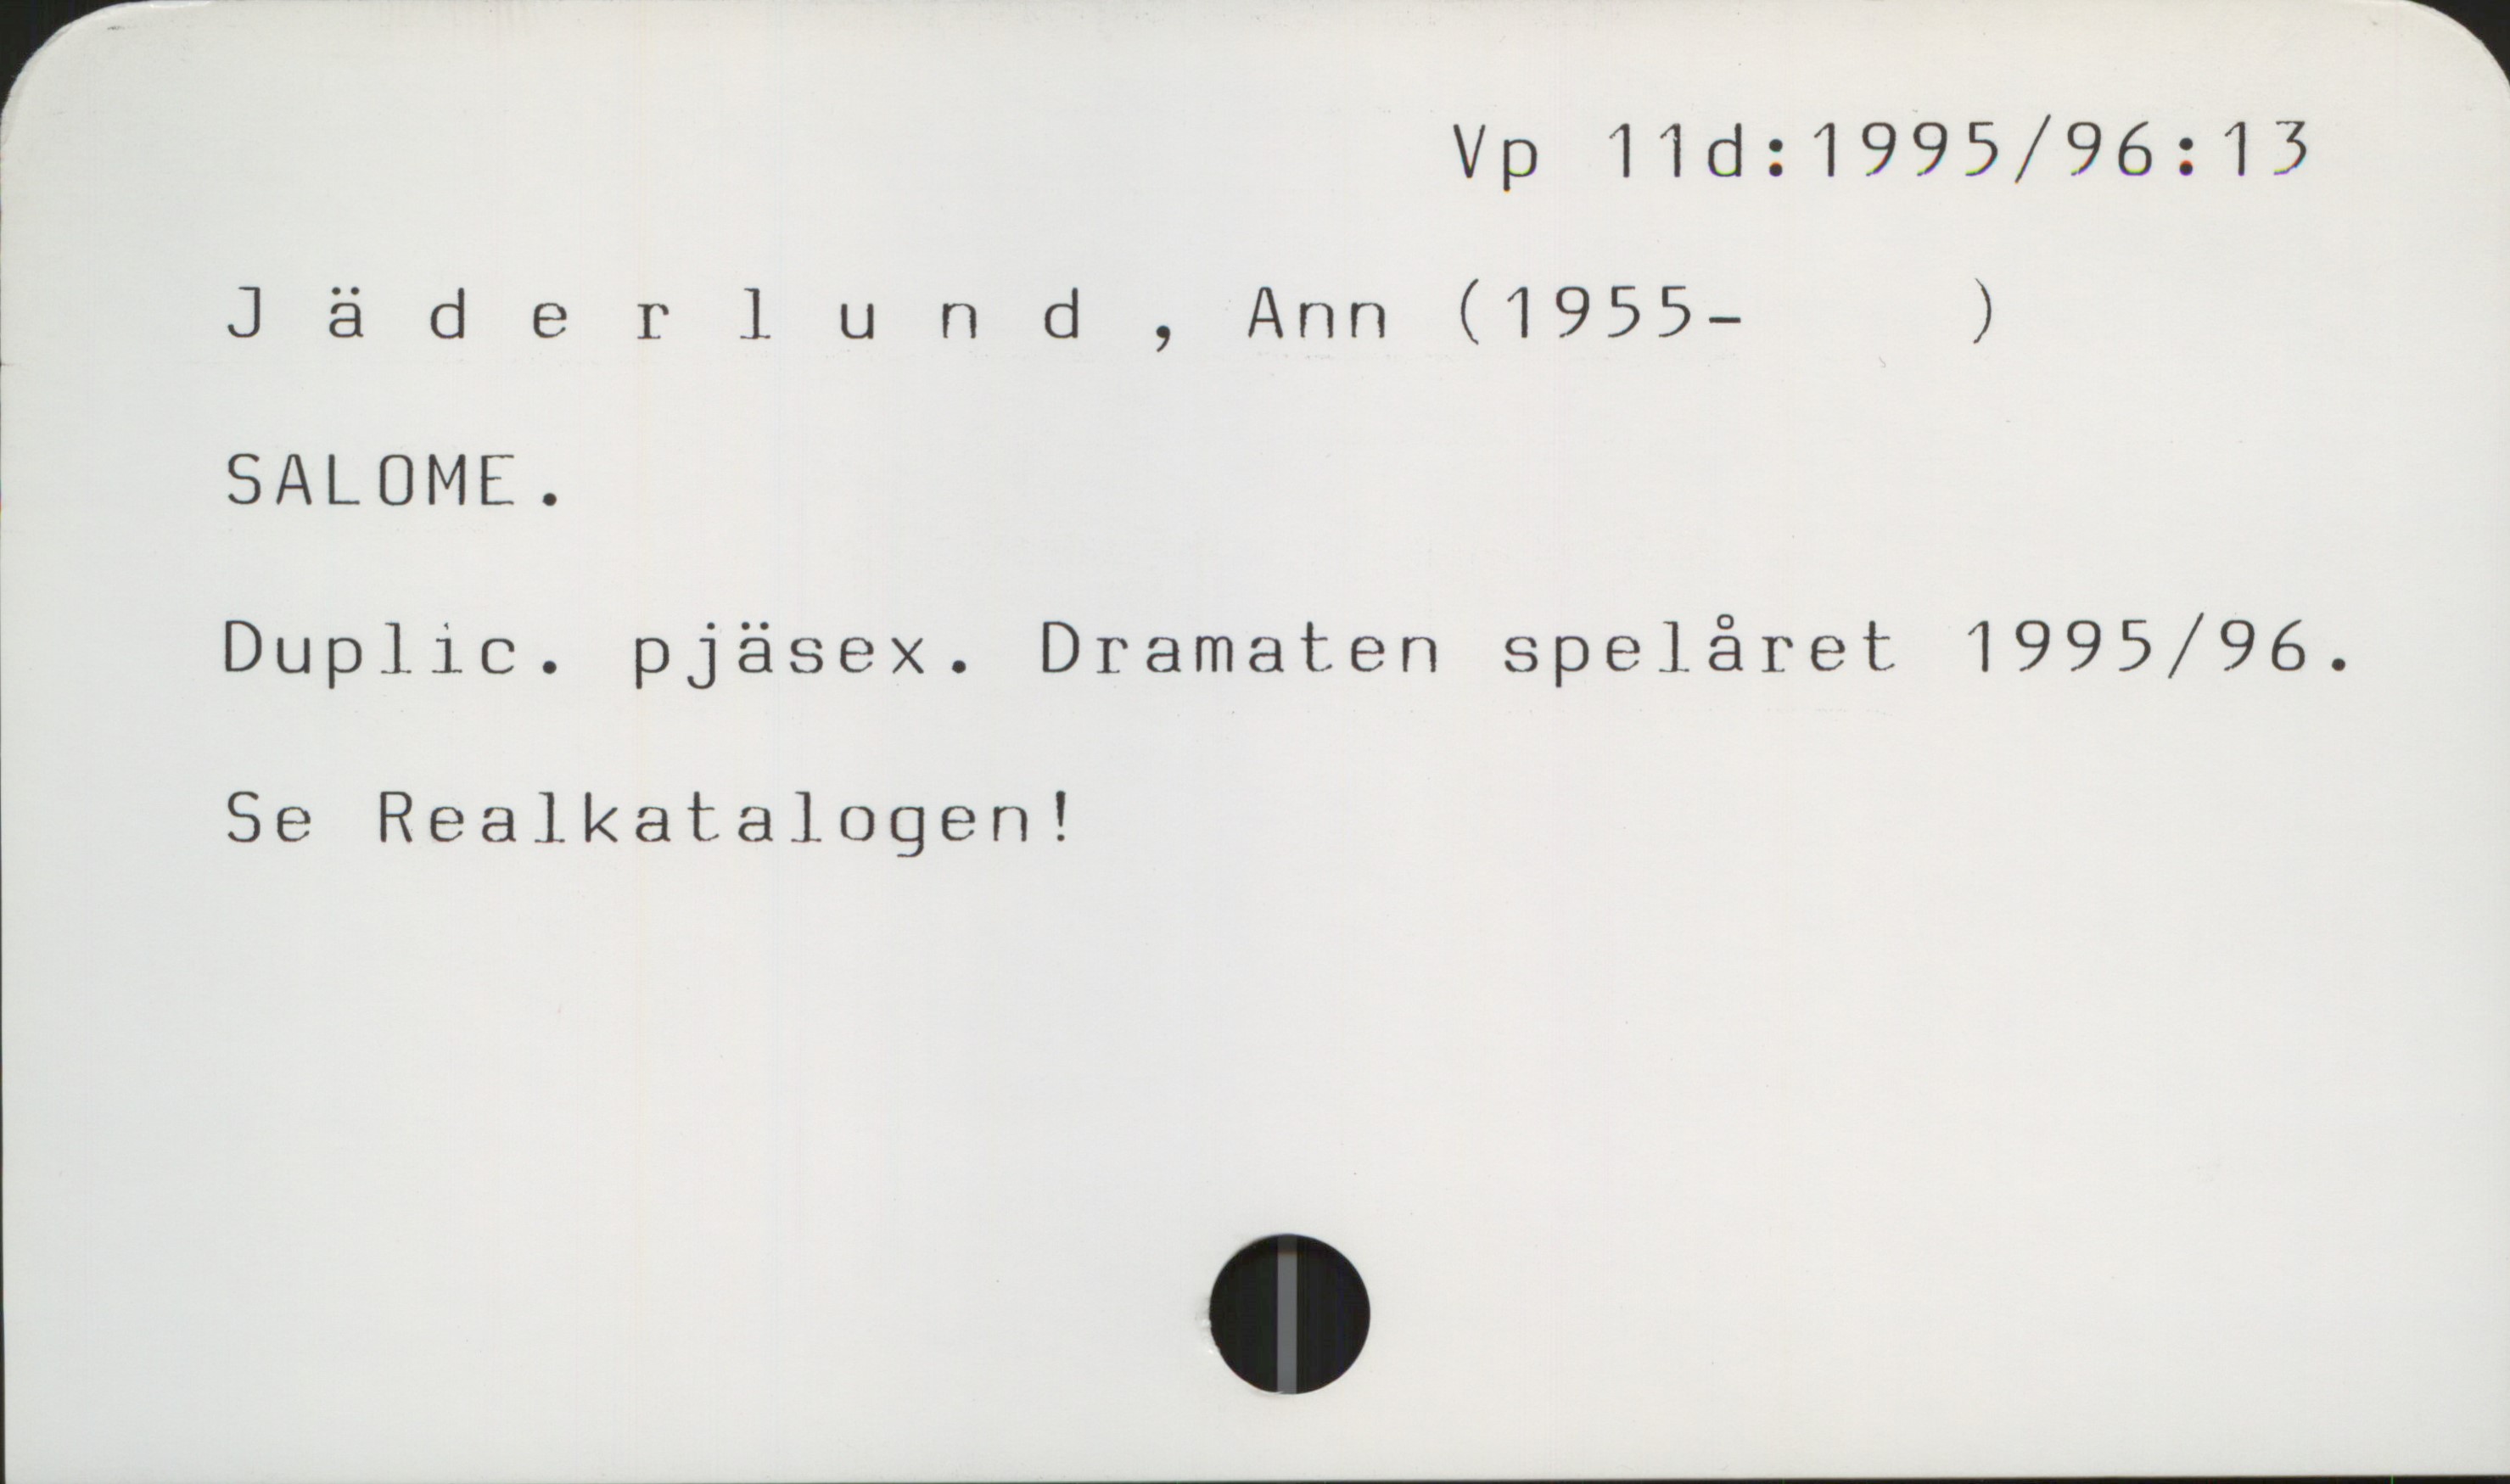 Jäderlund , Ann (1955- ) Vp 11d:1995/96: 13

Jäderlund , Ann (1955- )

SALOME 
Duplic. pjäsex. Dramaten spelåret 1995/96.

Se Realkatalogen !